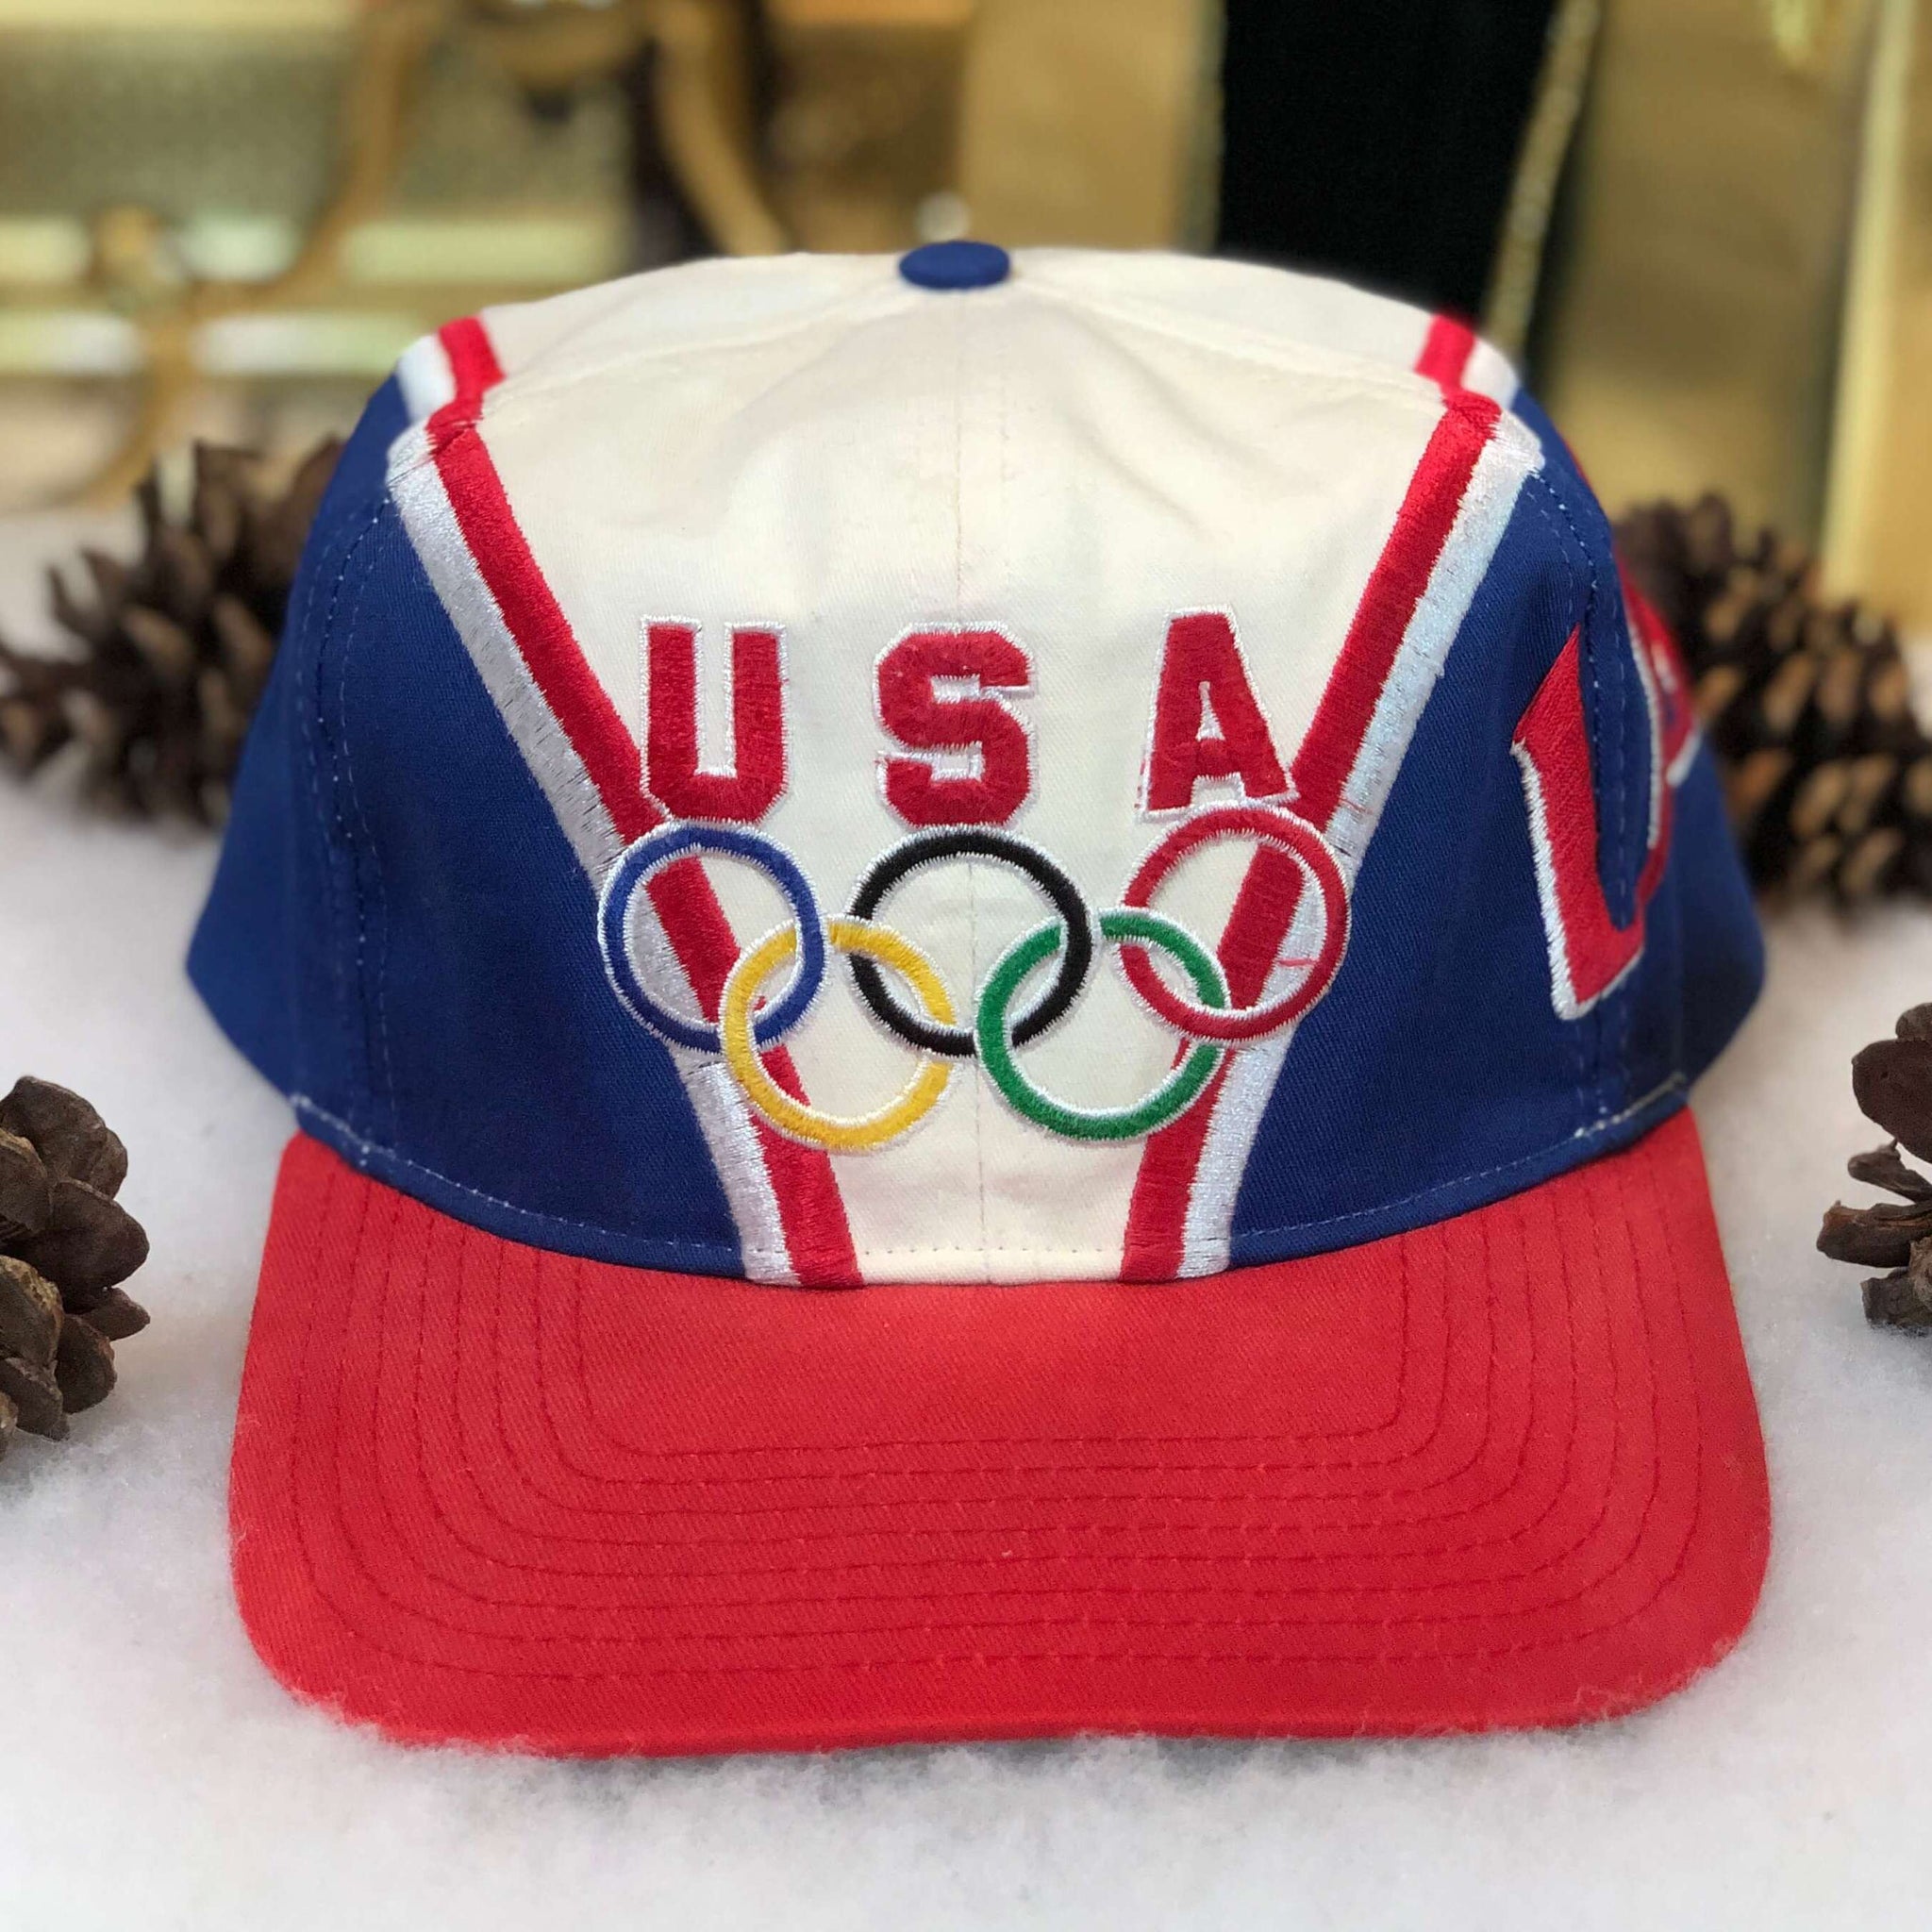 Vintage USA Olympics Twill Snapback Hat